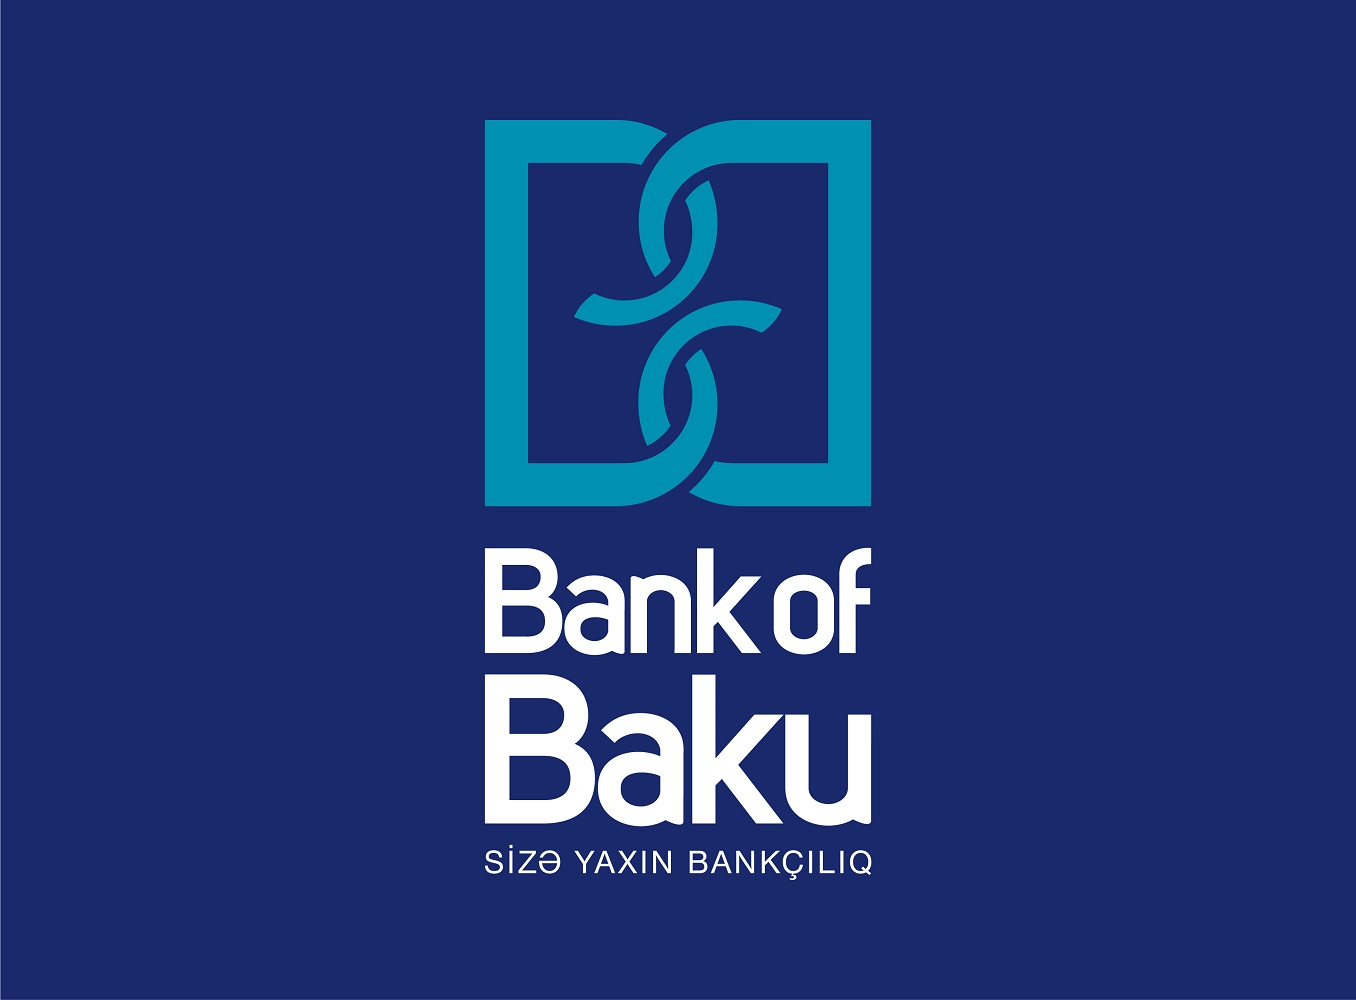 Bank of Baku “Qarabağ Dirçəliş Fondu”na 100.000 AZN köçürdü!